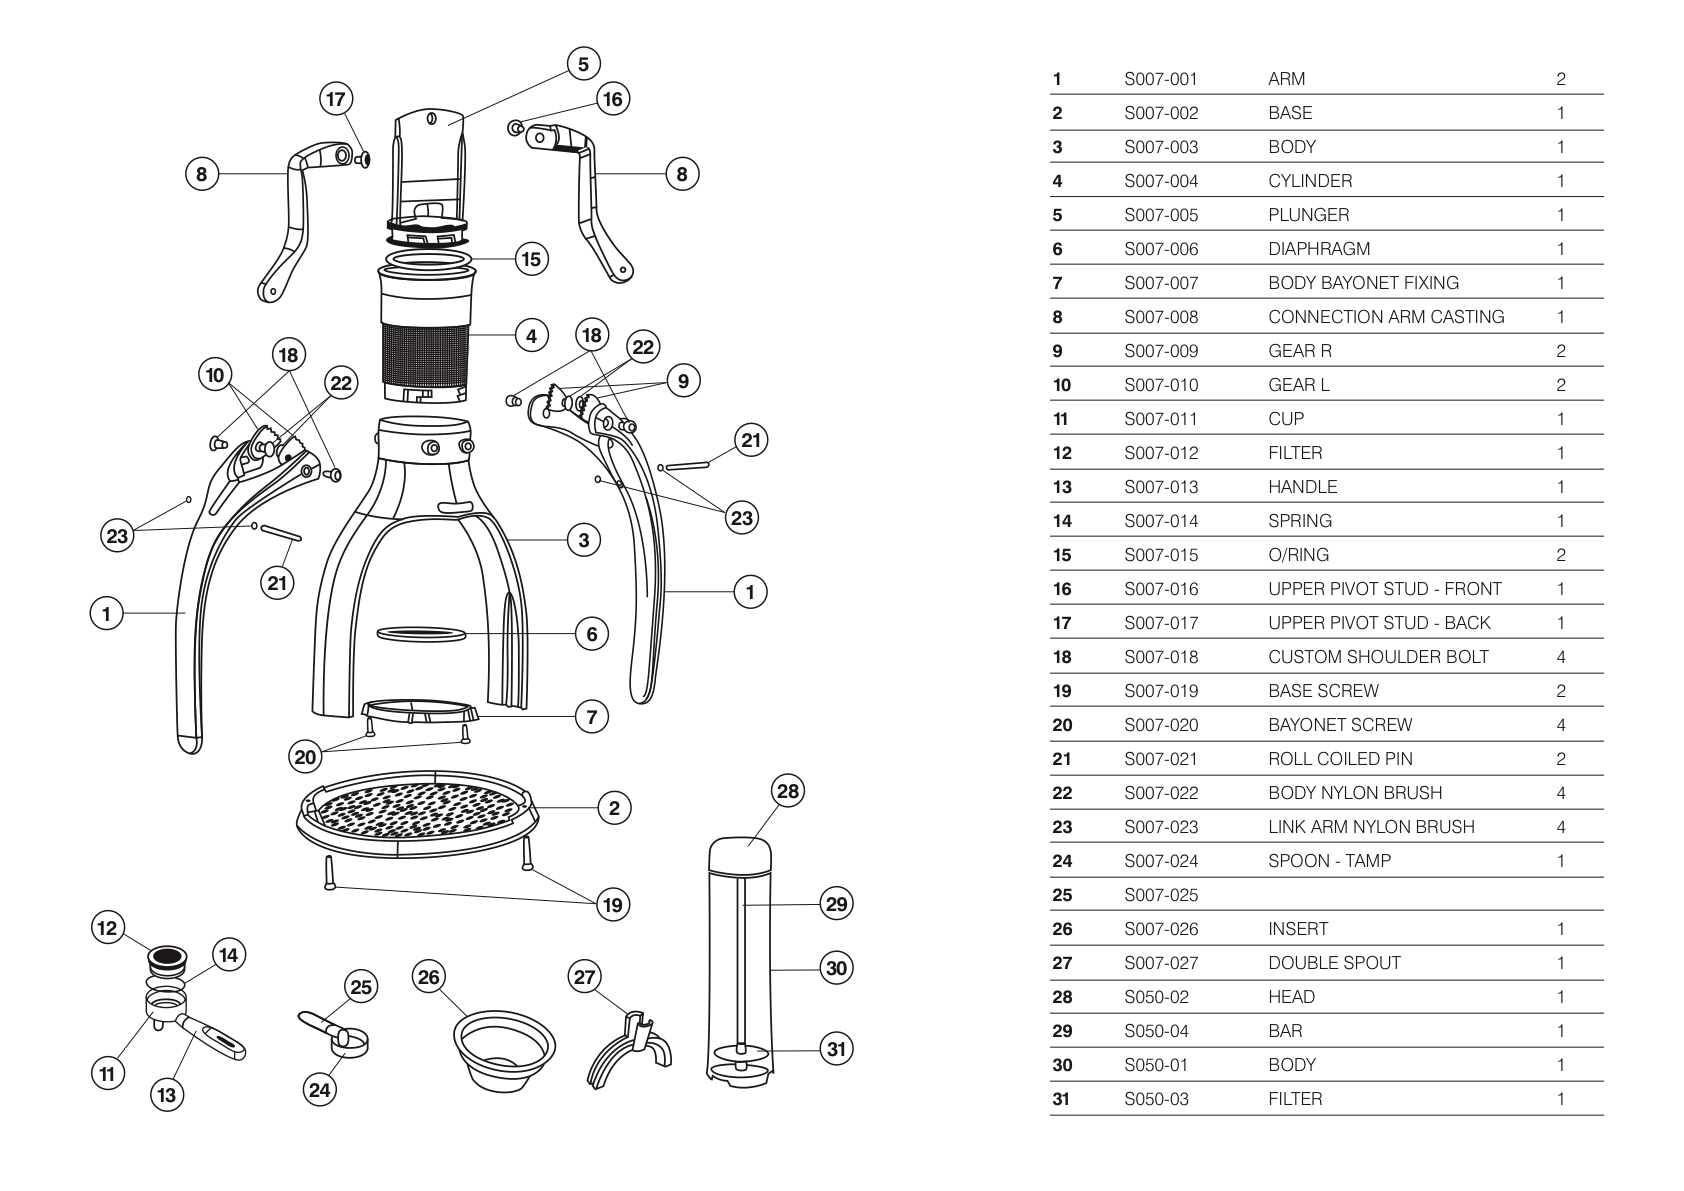 ROK Espresso Maker/diagrams and manuals - Whole Latte Love ... rancilio grinder diagram 